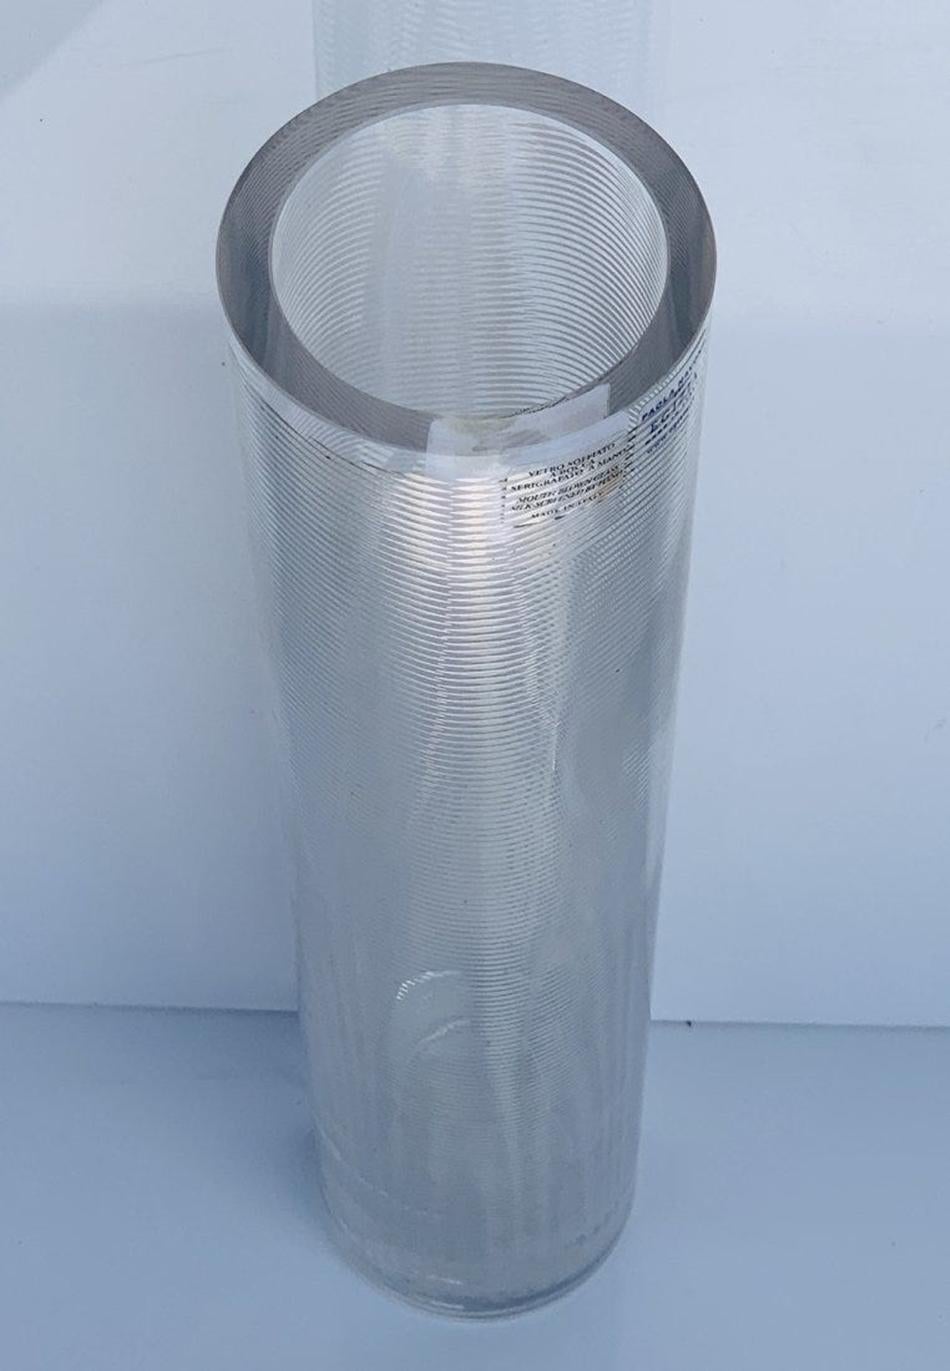 Magnifique vase en verre conçu par Paola Navone, fabriqué par Sottsass Associati pour Egizia.

Fabriqué en 1998.

La décoration du vase est réalisée en sérigraphie à la main avec de l'argent 980/1000, cuit à 540°.

Mesures : 
12 pouces de haut x